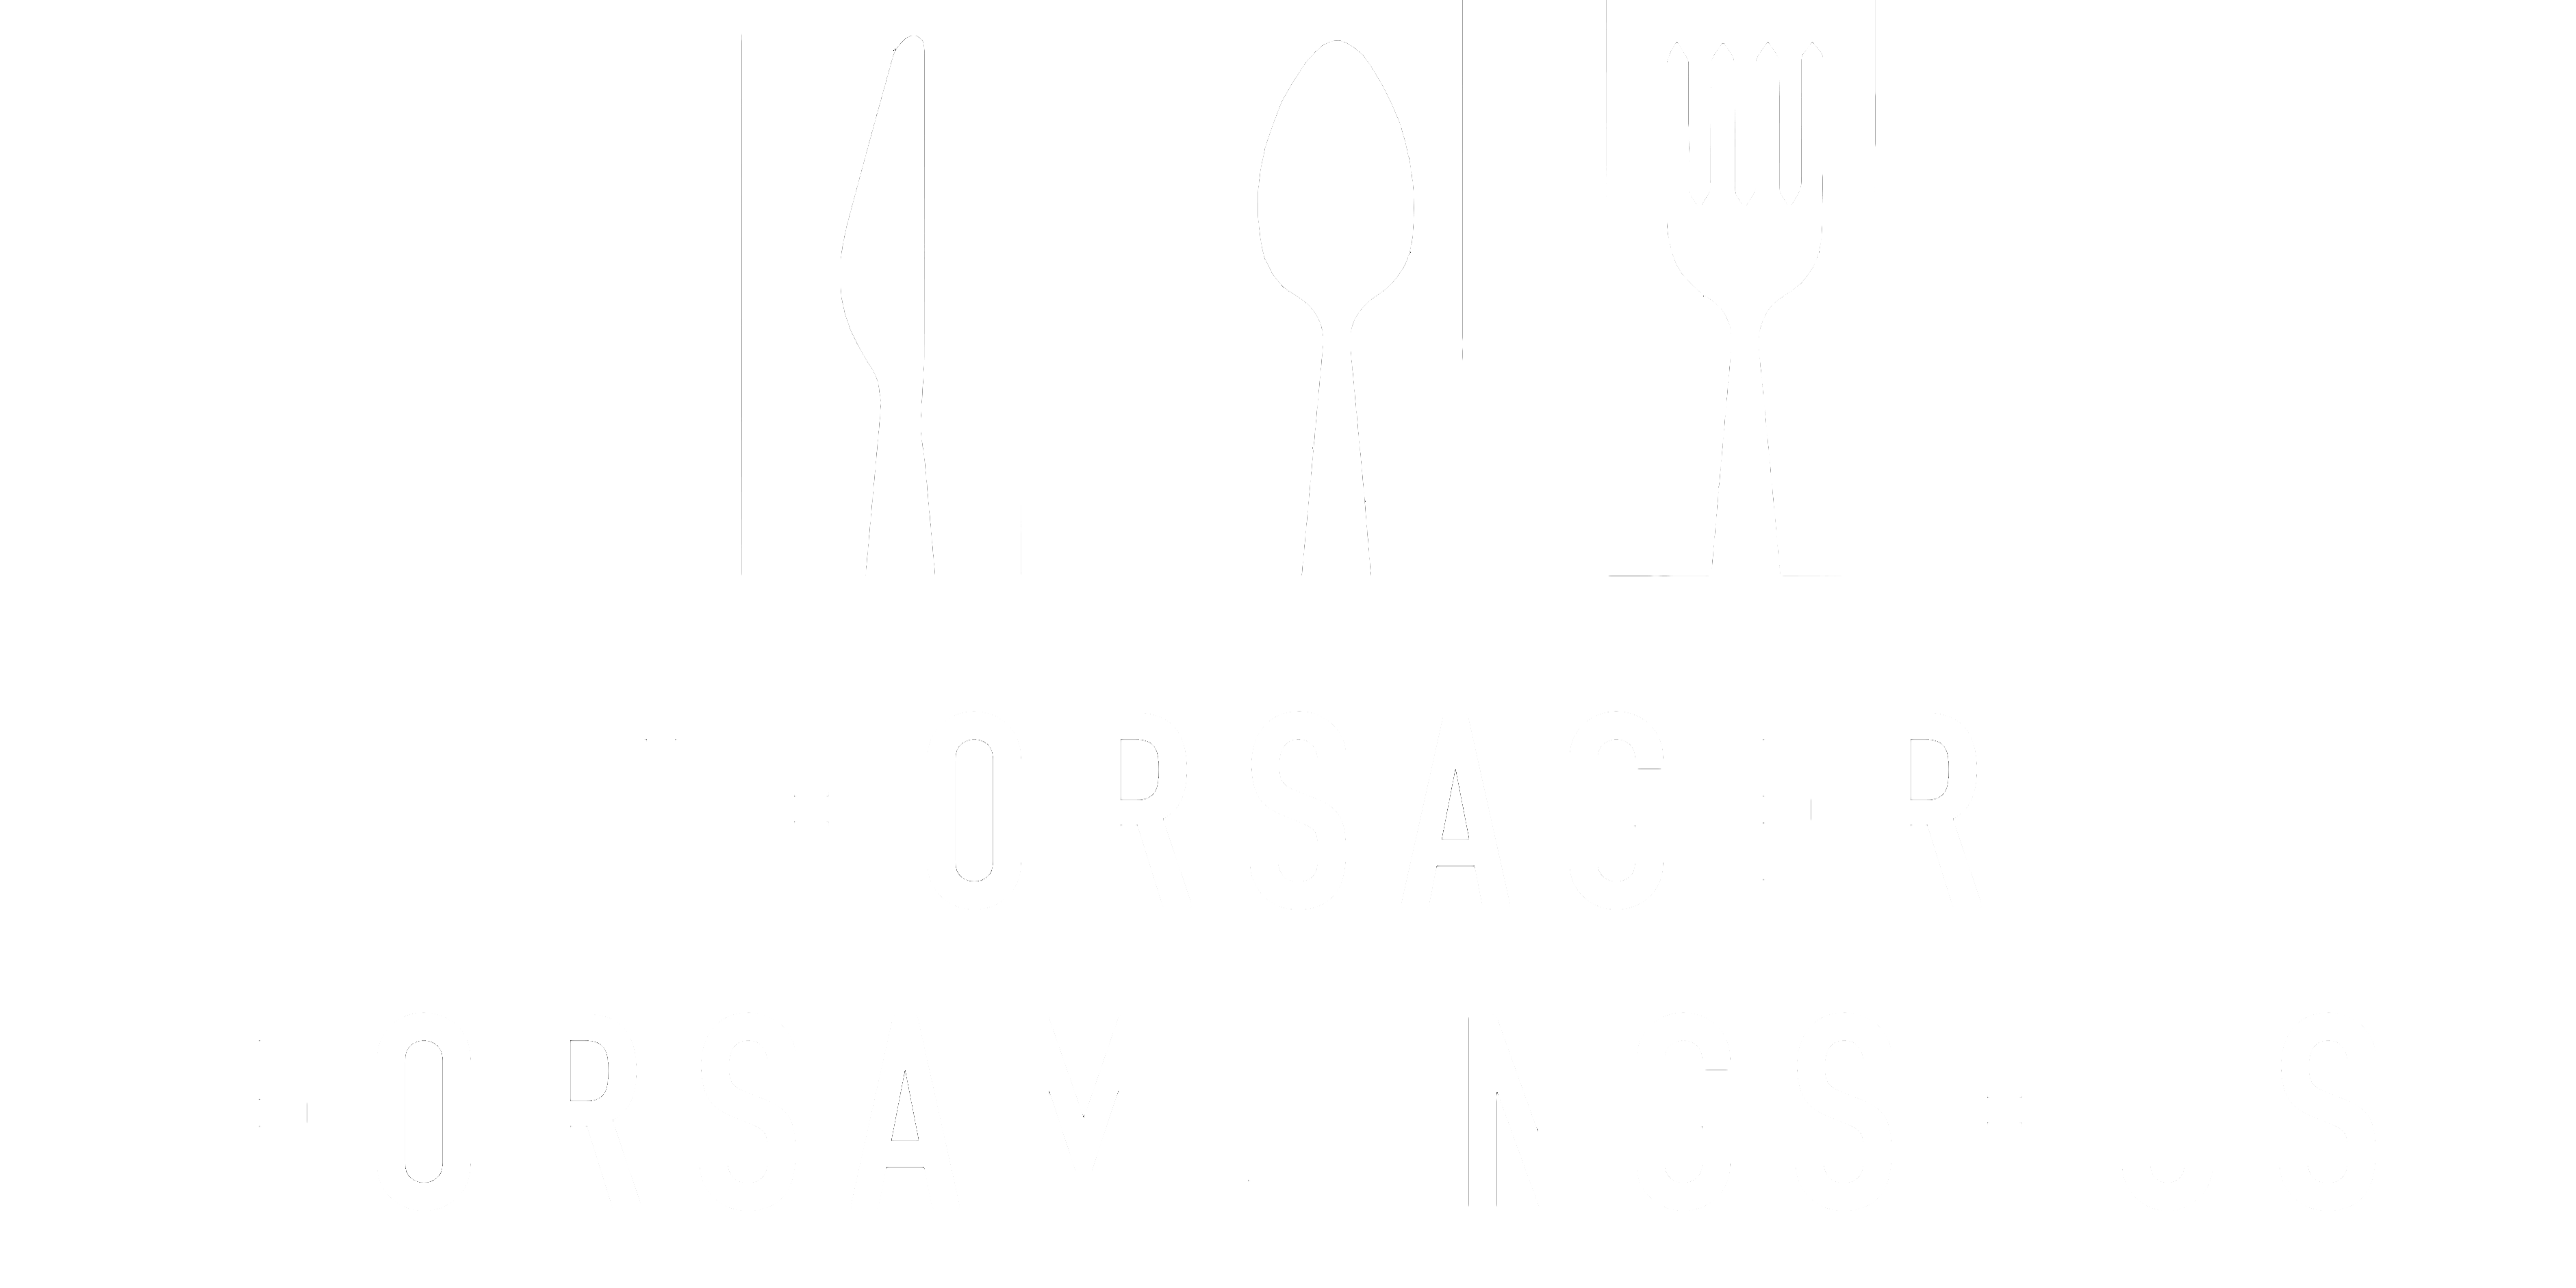 Fest på Djursland, vælg Thorsager Forsamlingshus